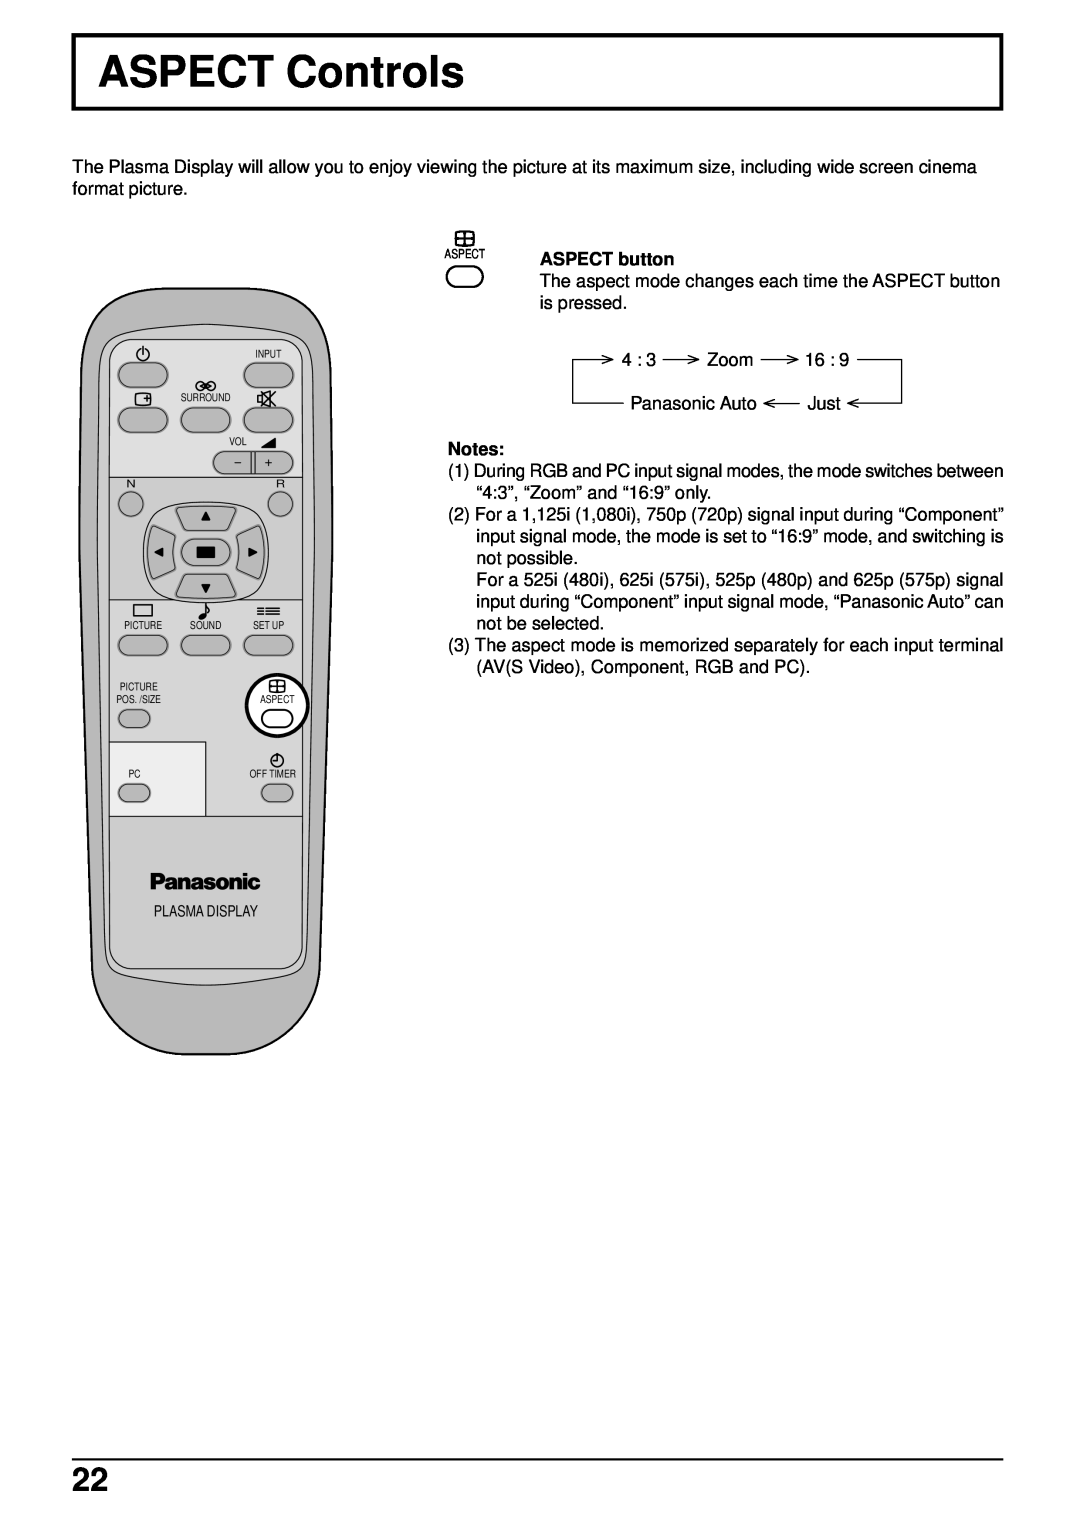 Panasonic TH-50PHW5, TH-42PHW5 manual ASPECT Controls, Plasma Display 